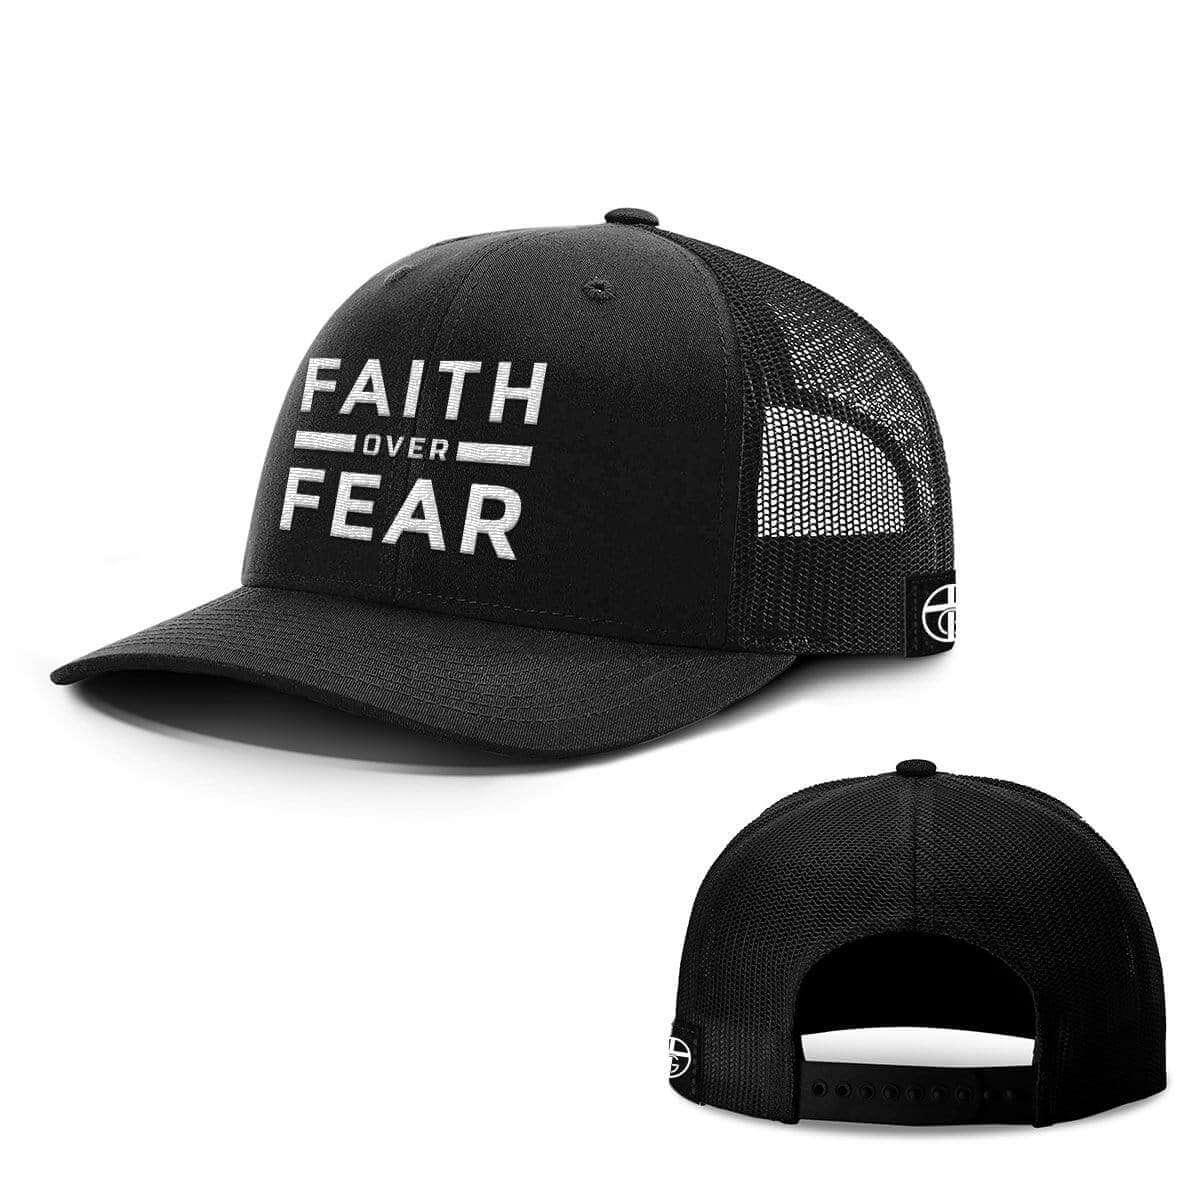 Faith Over Fear Hats - Our True God